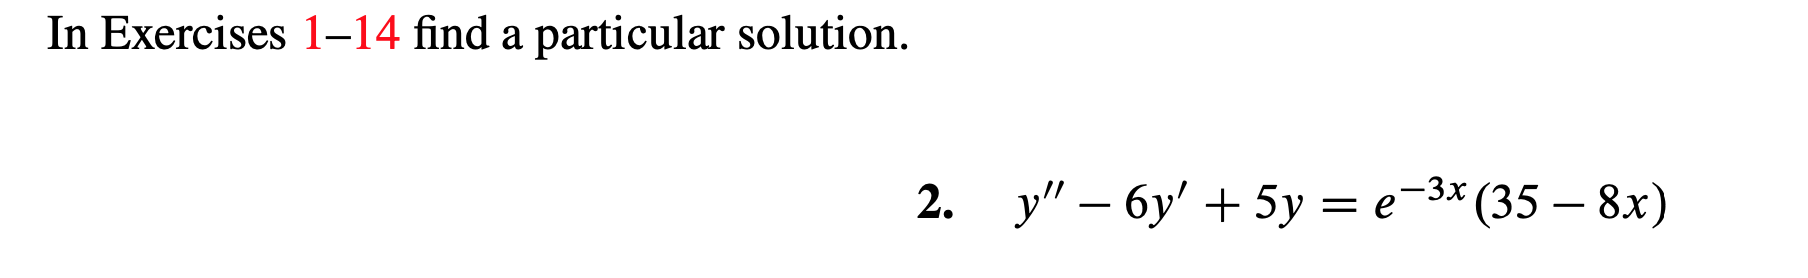 In Exercises 1-14 find a particular solution.
-3х (35 — 8х)
у" - бу' + 5у %3D е
2.
=
